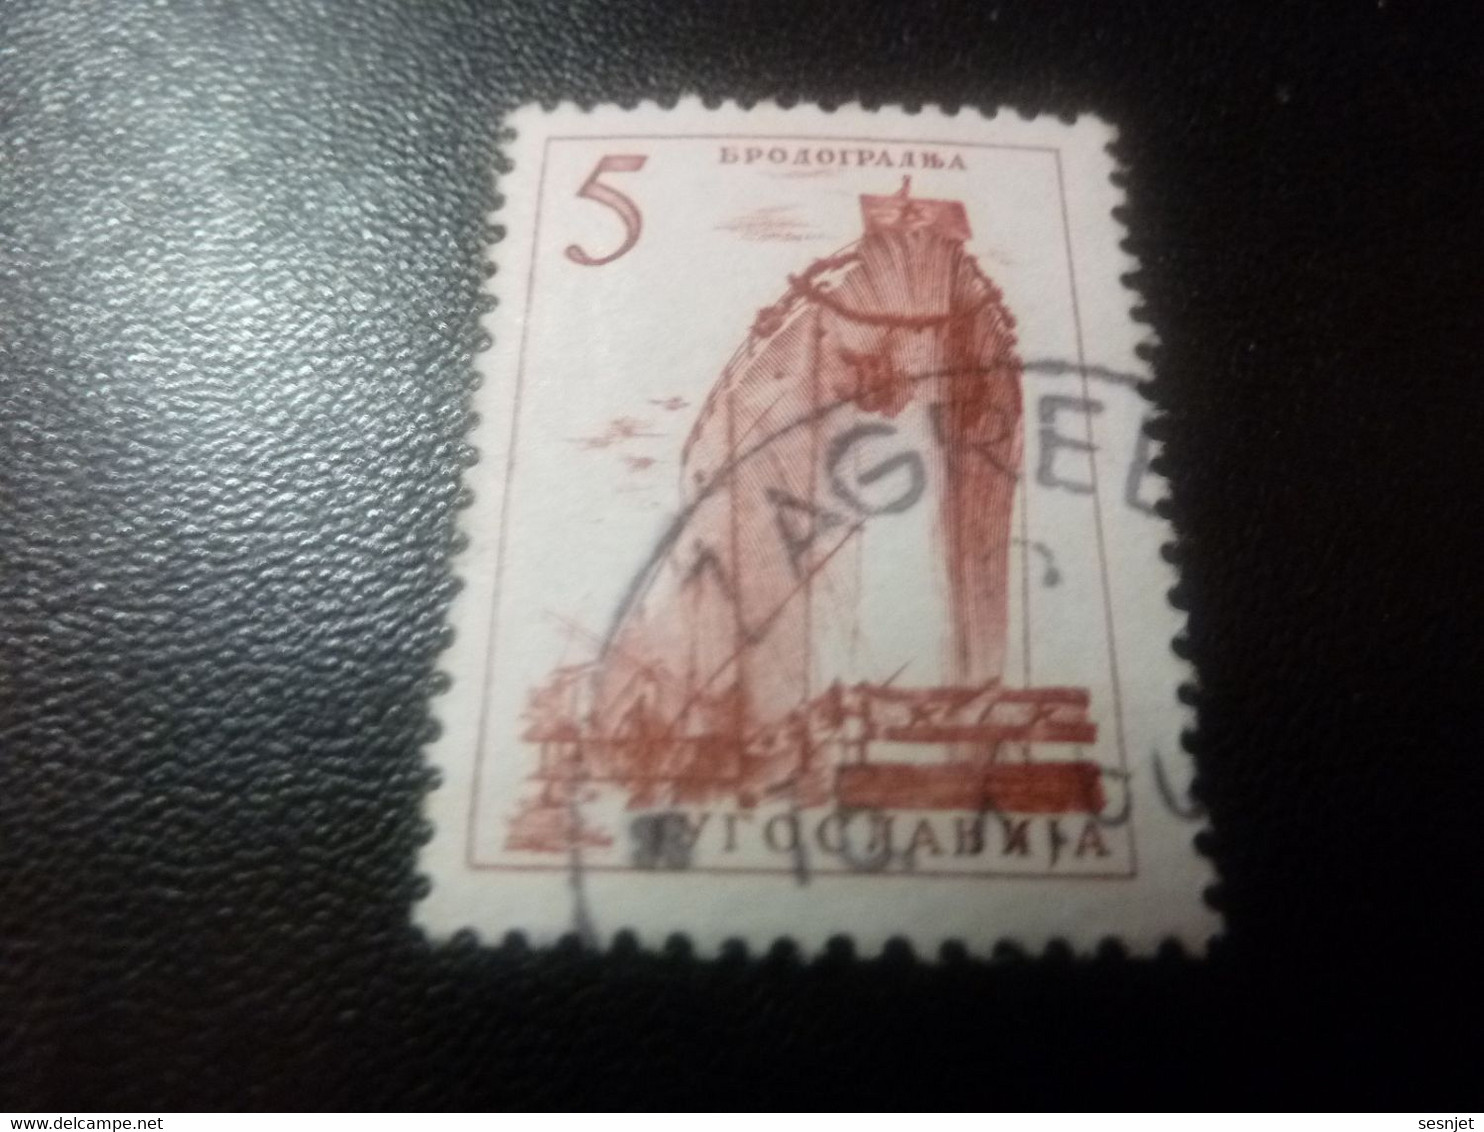 Jugoslavija -Bpoao1pa - Val 5 - Rose Foncé - Oblitéré - - Used Stamps